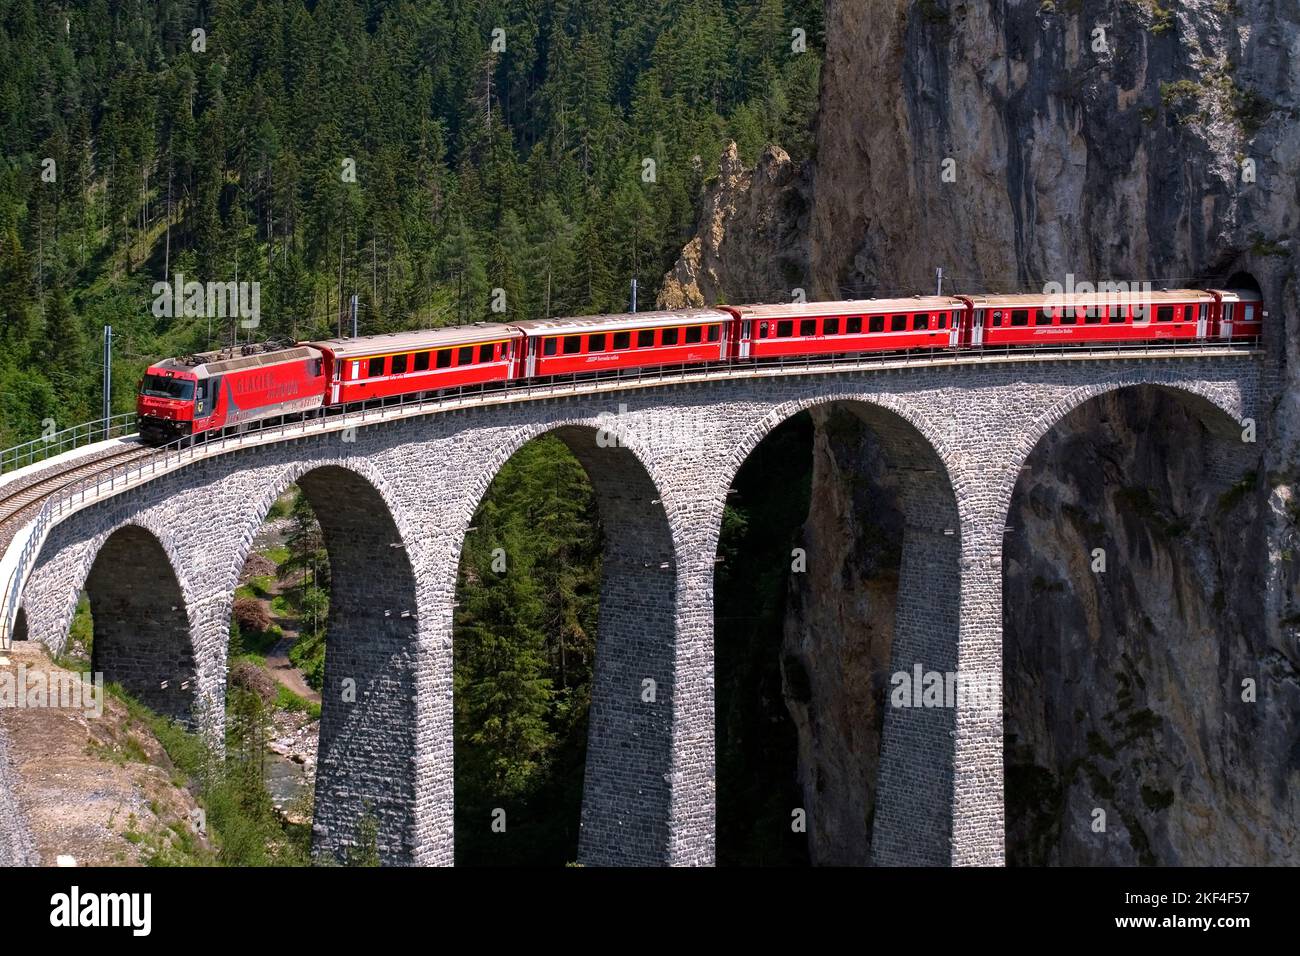 Glacier Express, Express Zug der Rhätischen Bahn am Landwehr Viaduct in den Schweizer Alpen, Schweiz. Stock Photo